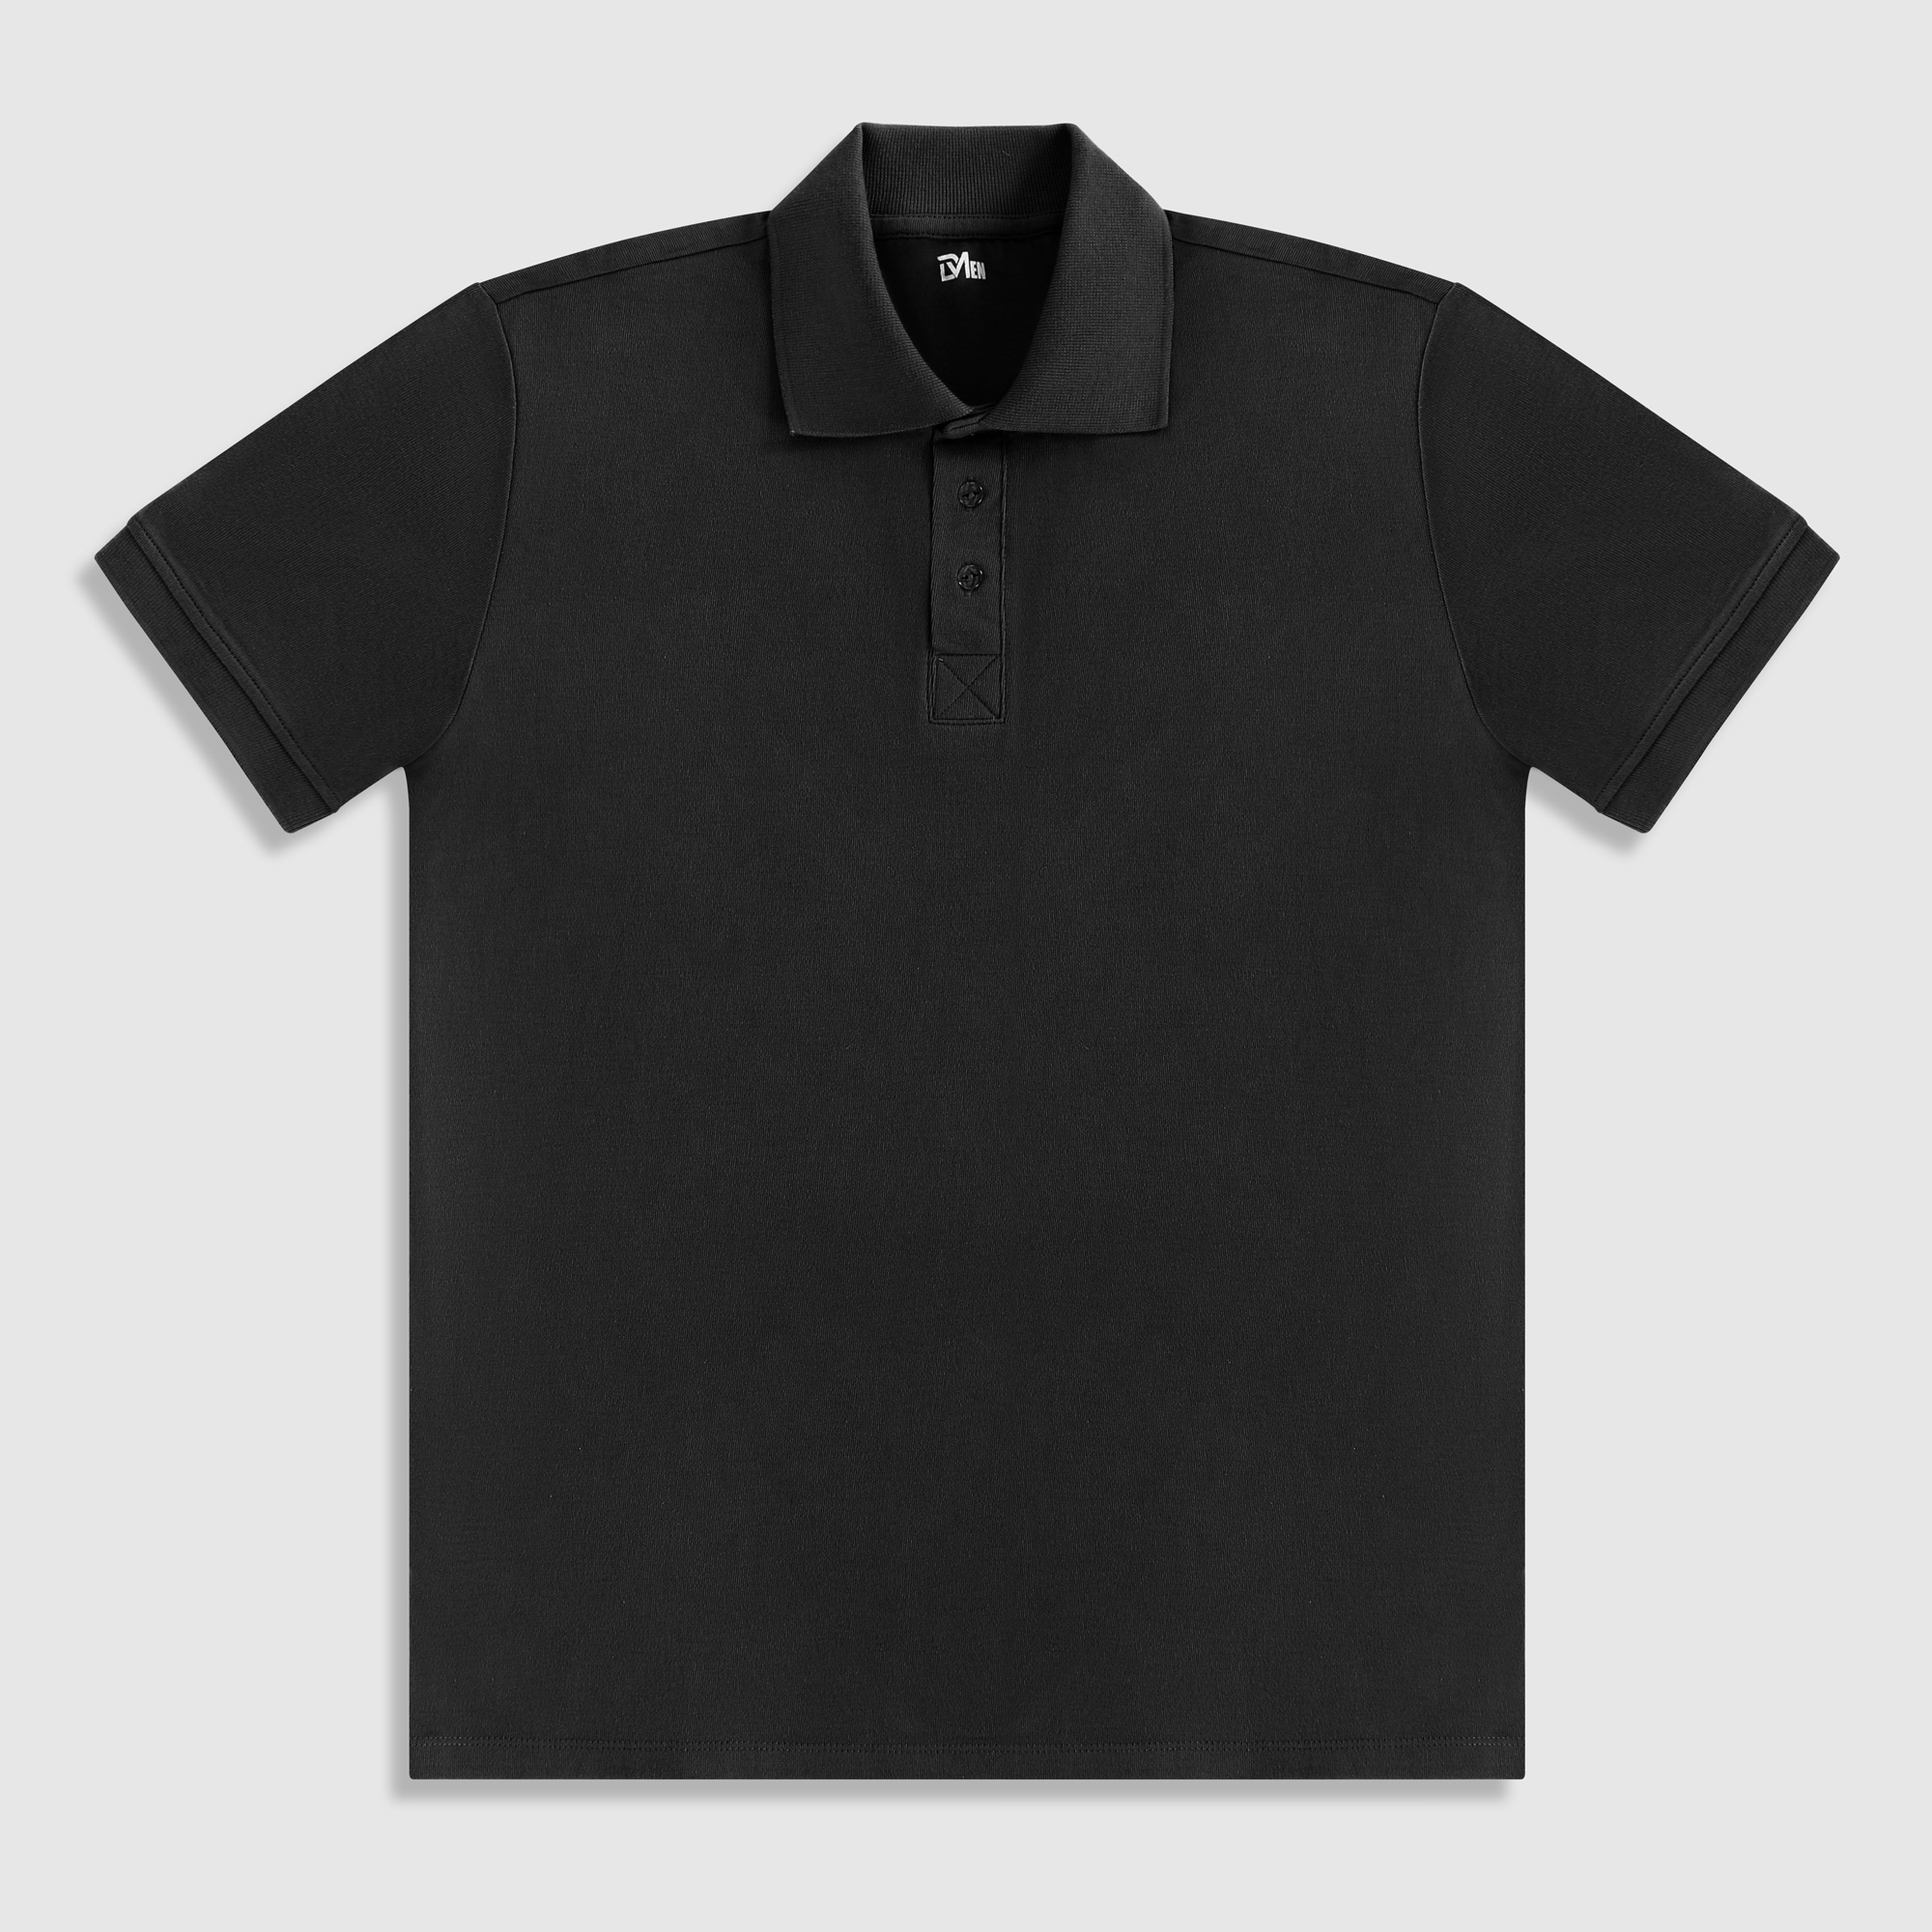 Рубашка мужская Diva Teks поло черная, цвет черный, размер S